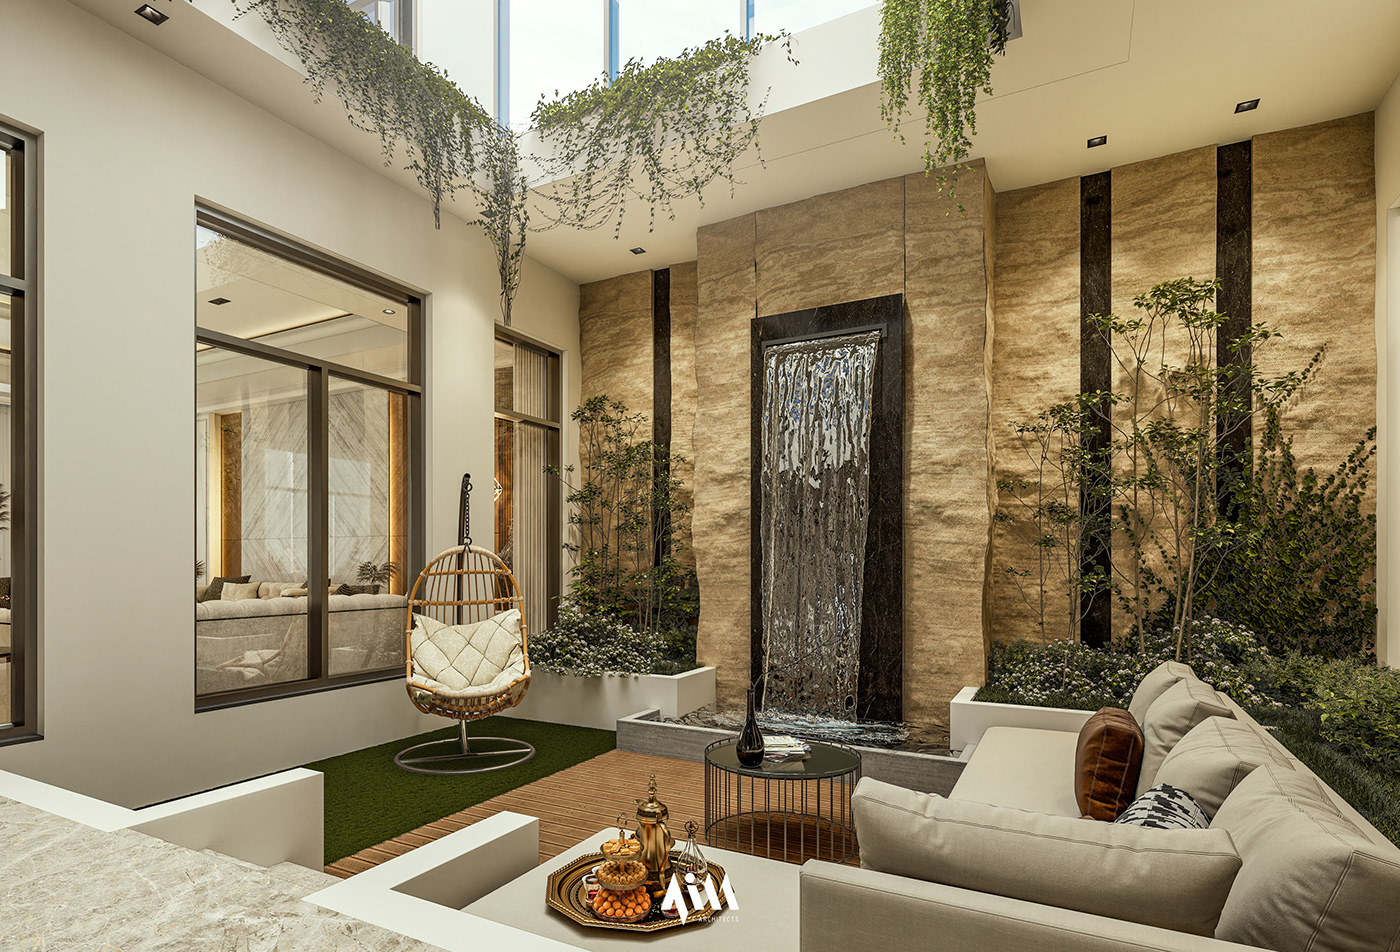 Interior architecture visualization Render interior design  modern home decor Landscape garden interiordesign